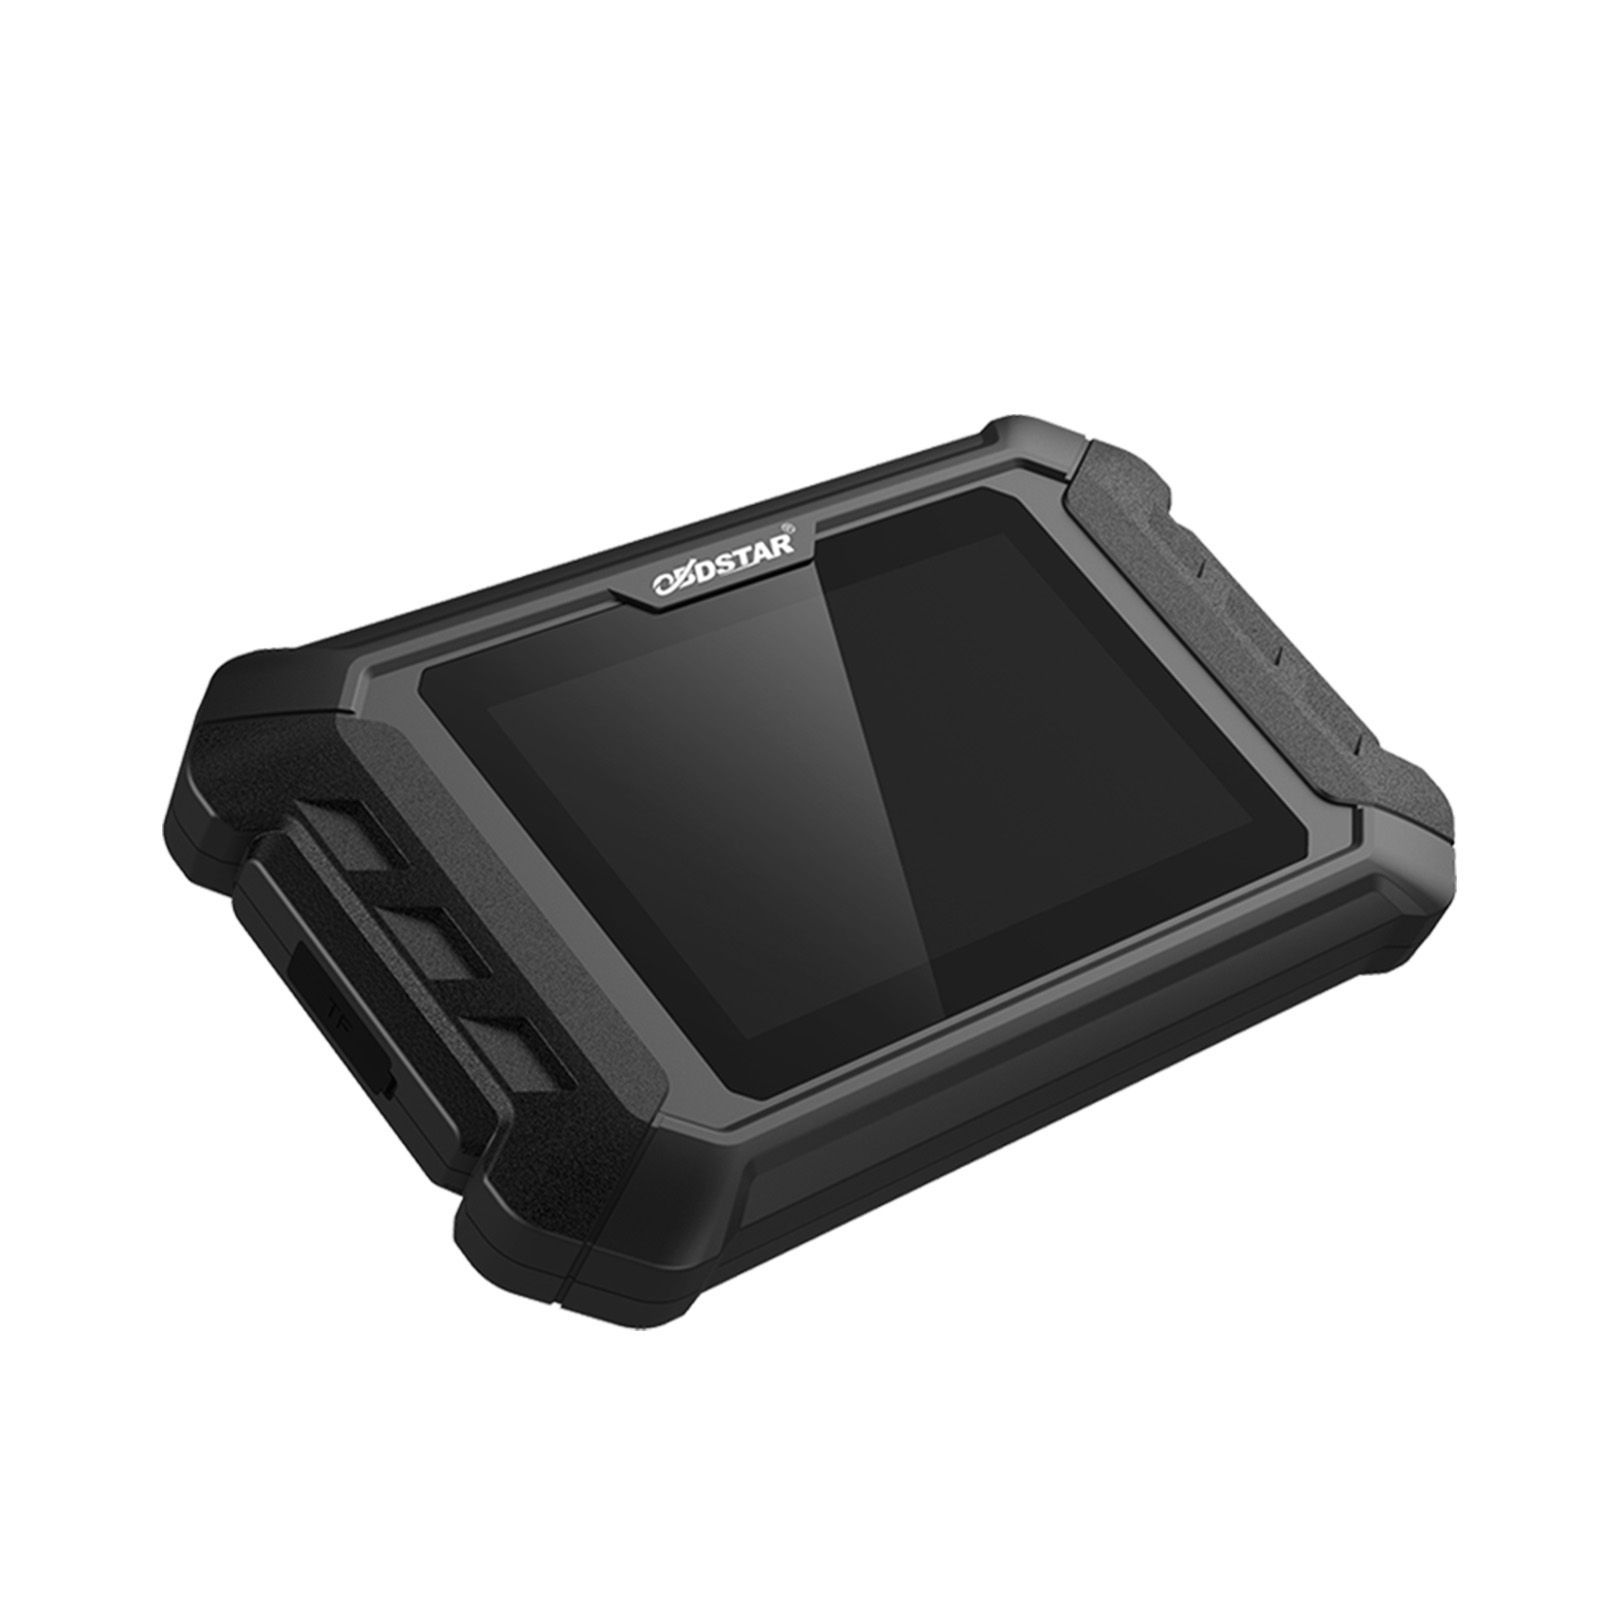 OBDSTAR iScan MV Agusta Ferramenta de Diagnóstico Inteligente Da Motocicleta Portátil Tablet Scanner